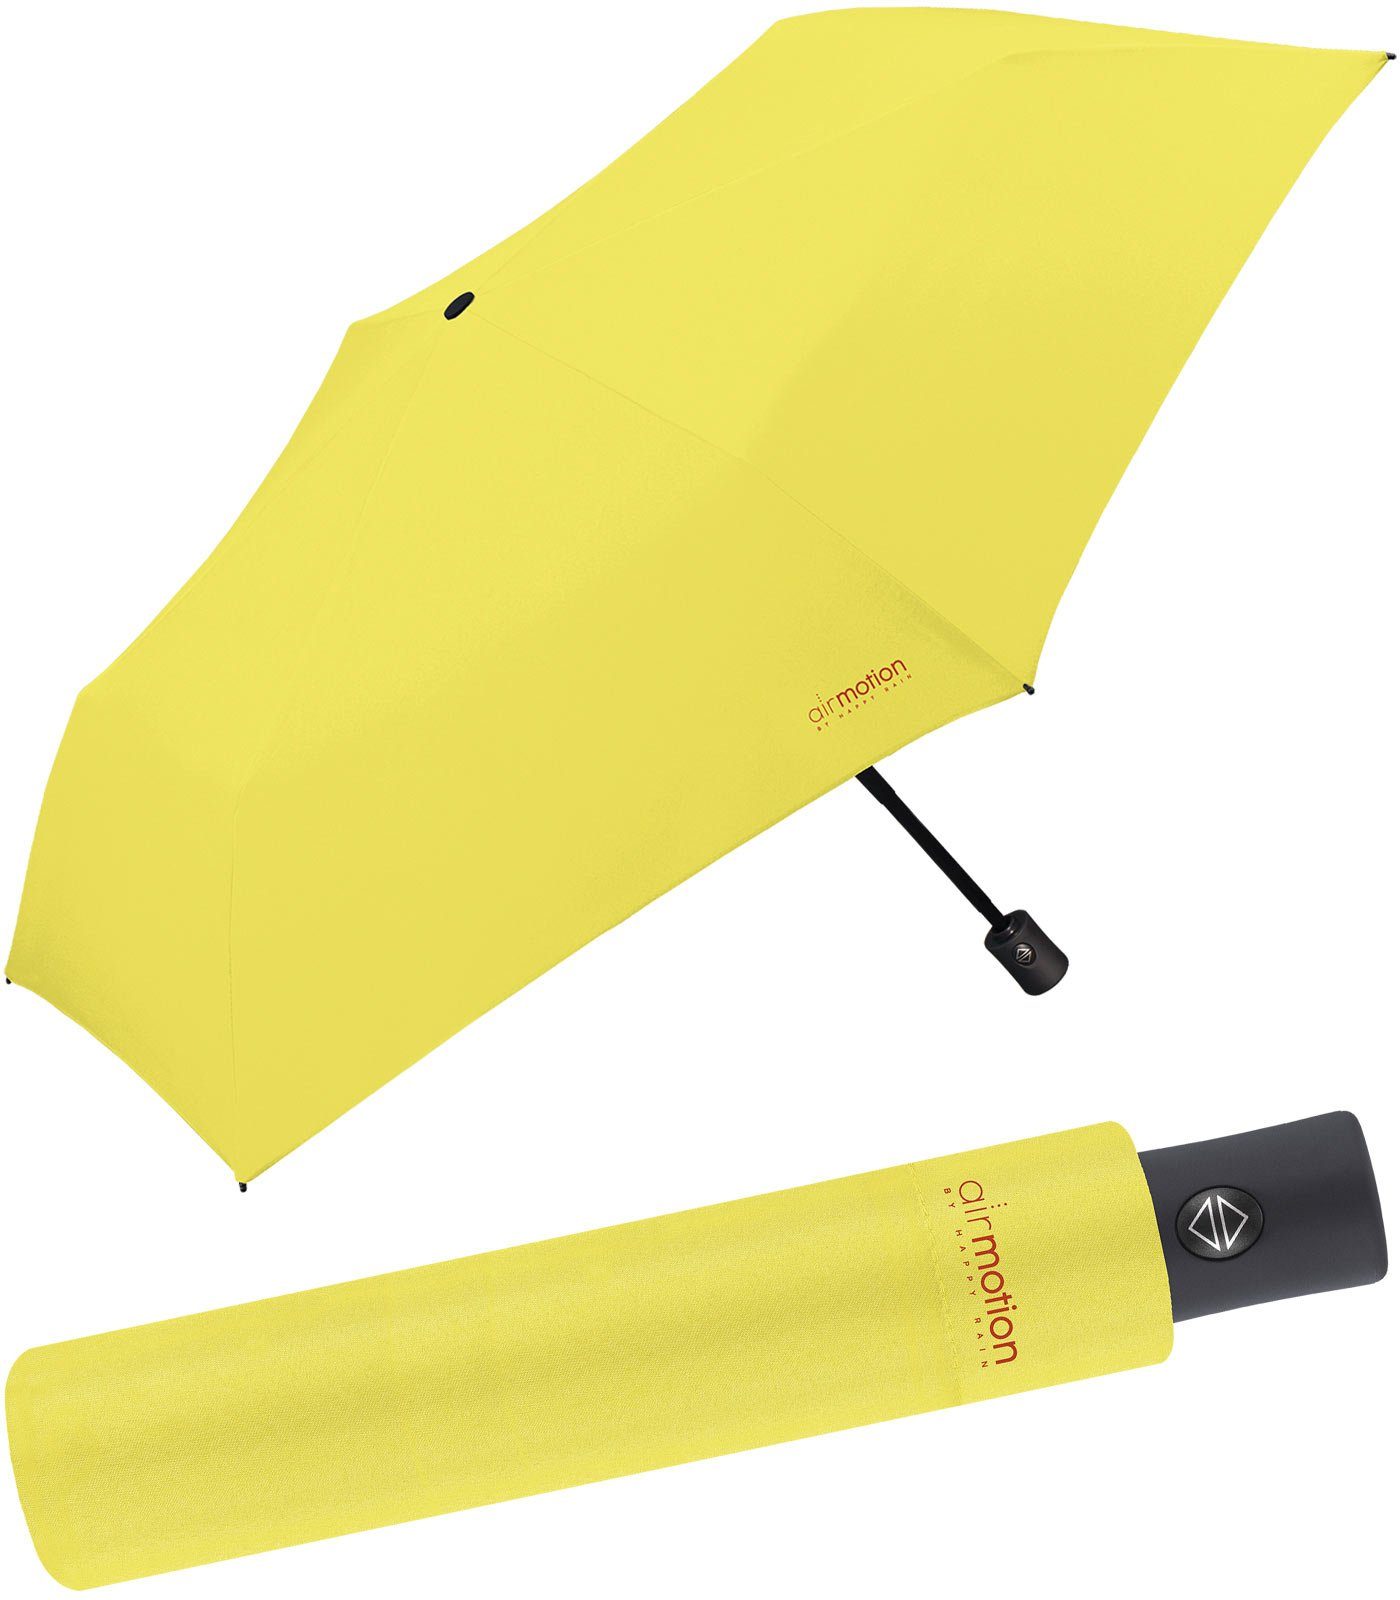 superleicht, Gepäck HAPPY für perfekt gelb Taschenregenschirm Minischirm g - Air und leichtester RAIN vollautomatischer - 174 Auf-Zu-Automatik Motion Handtasche